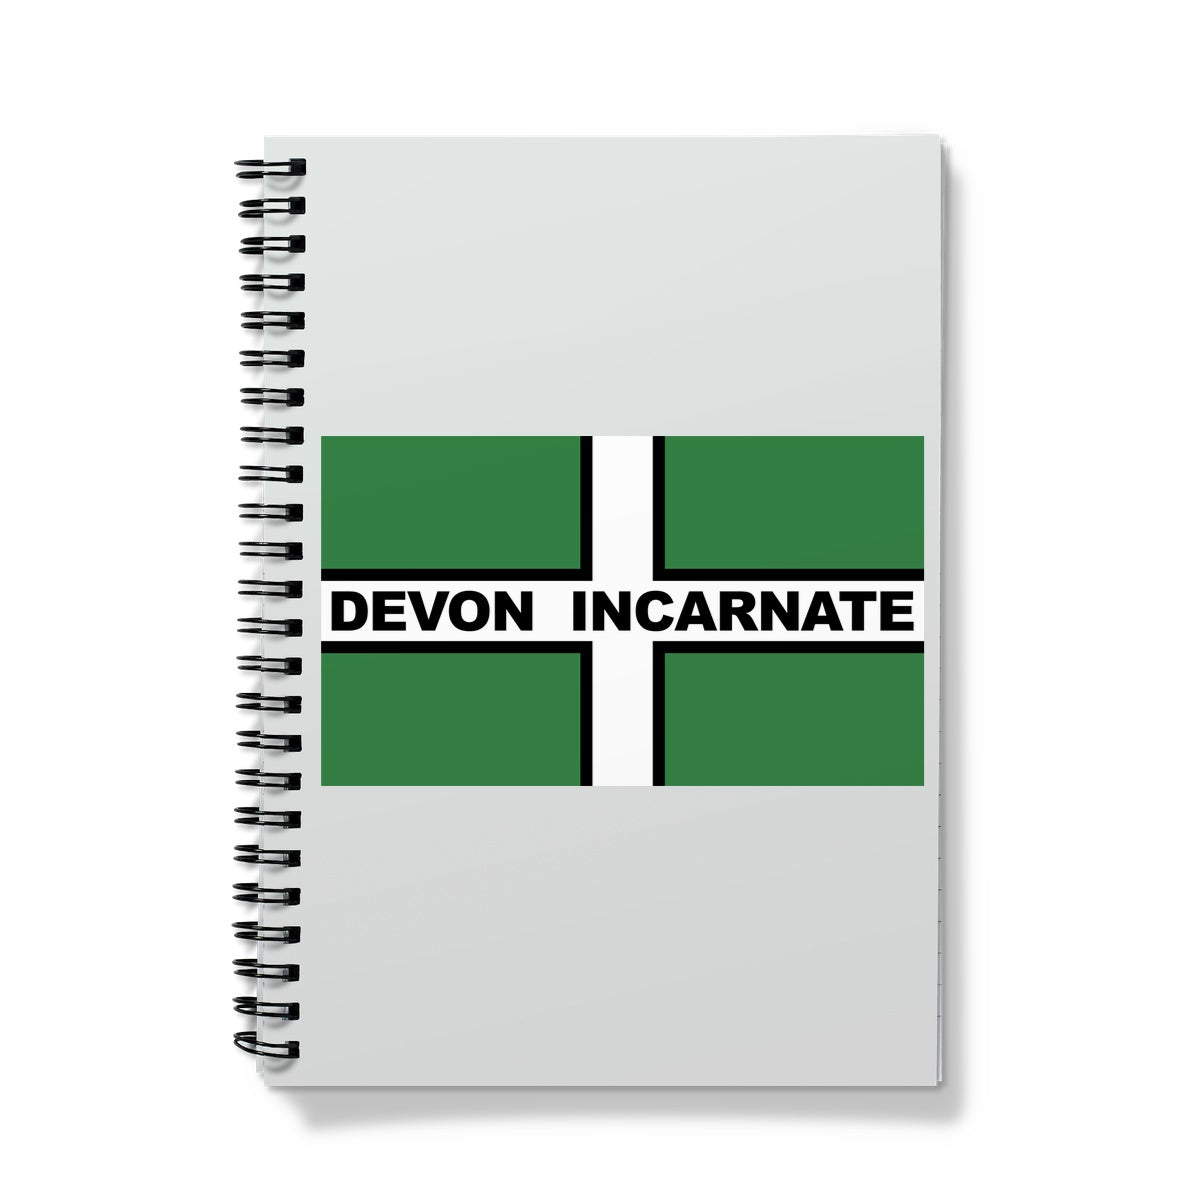 Devon Incarnate Notebook